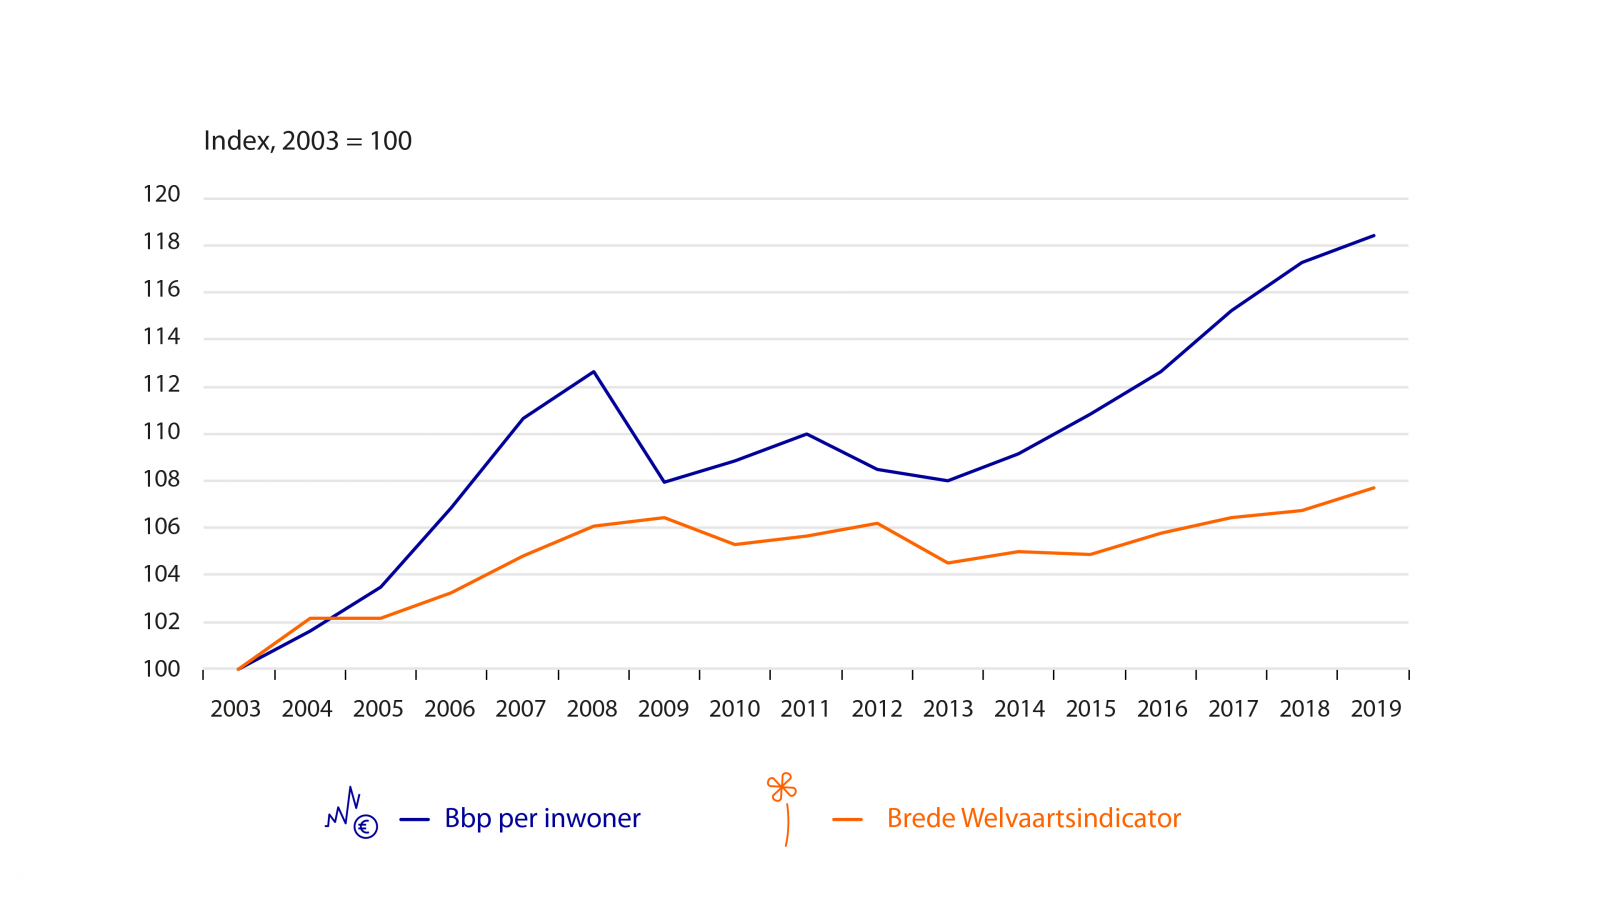 Grafiek die toename van brede welvaart t.o.v. bbp laat zien in Nederland